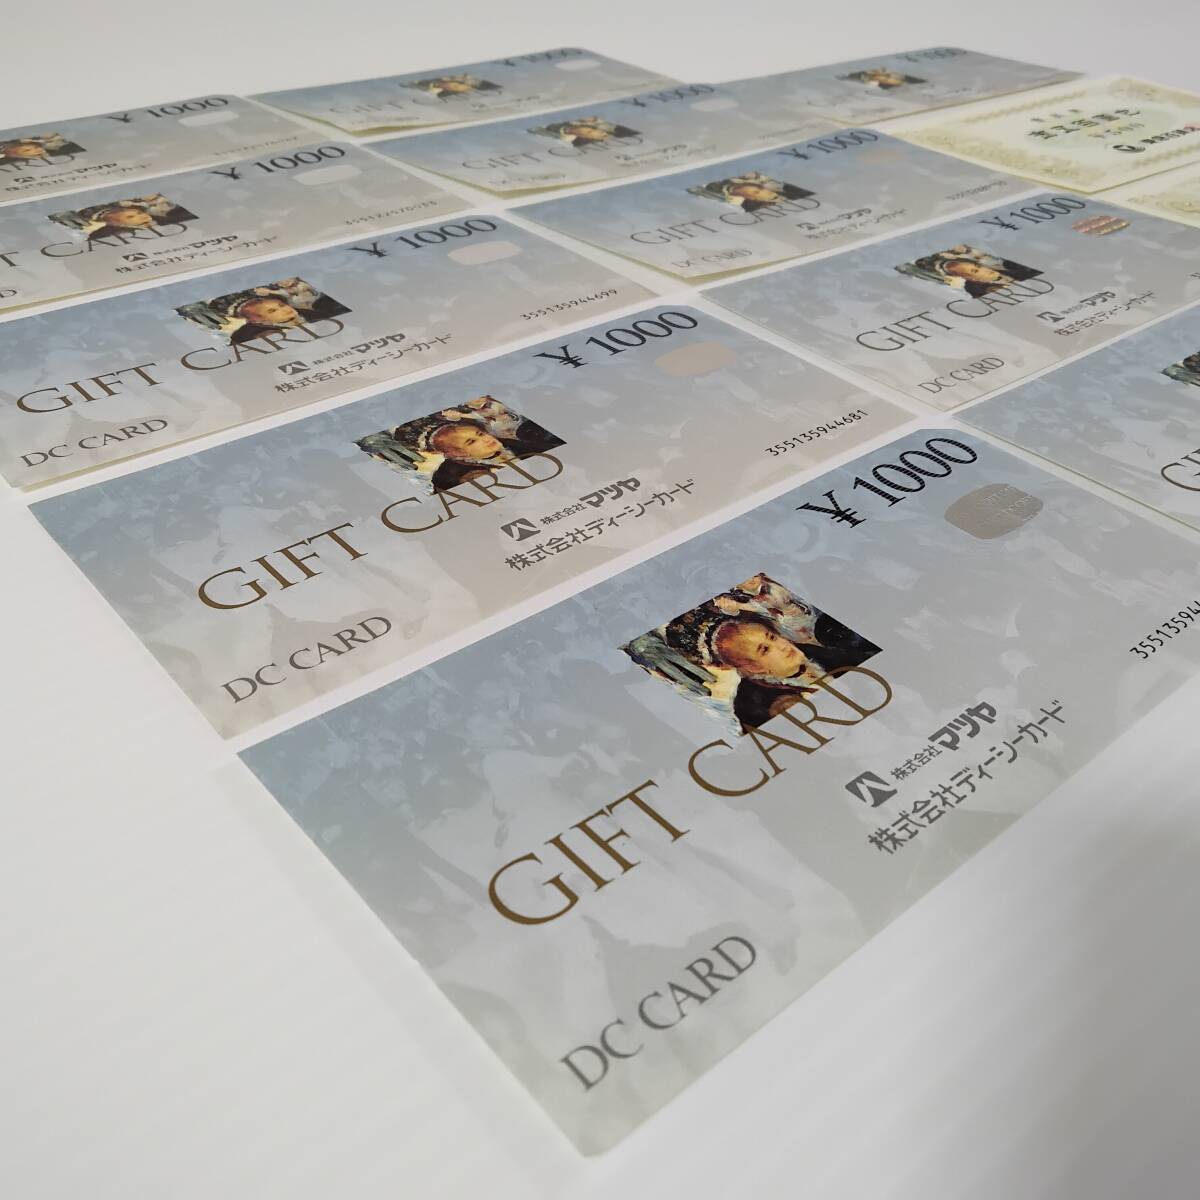 [DC CARD подарок карта ]12,000 иен минут 13 листов продажа комплектом Tokyu смешанный ассортимент магазин GIFT CARD/ акционерное общество ti- seeker do/ старый рисунок / старый талон /1000/ комплект #0551/6